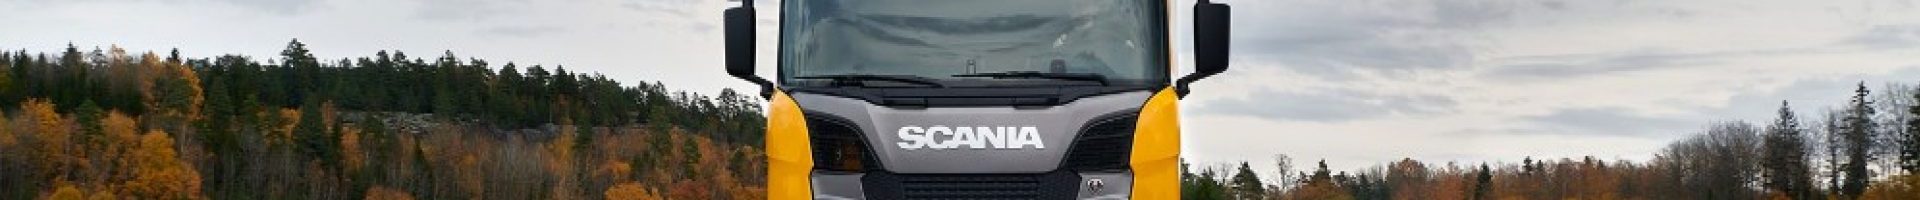 Тягач Scania 540 S признан лучшим крупнейшими европейскими изданиями!